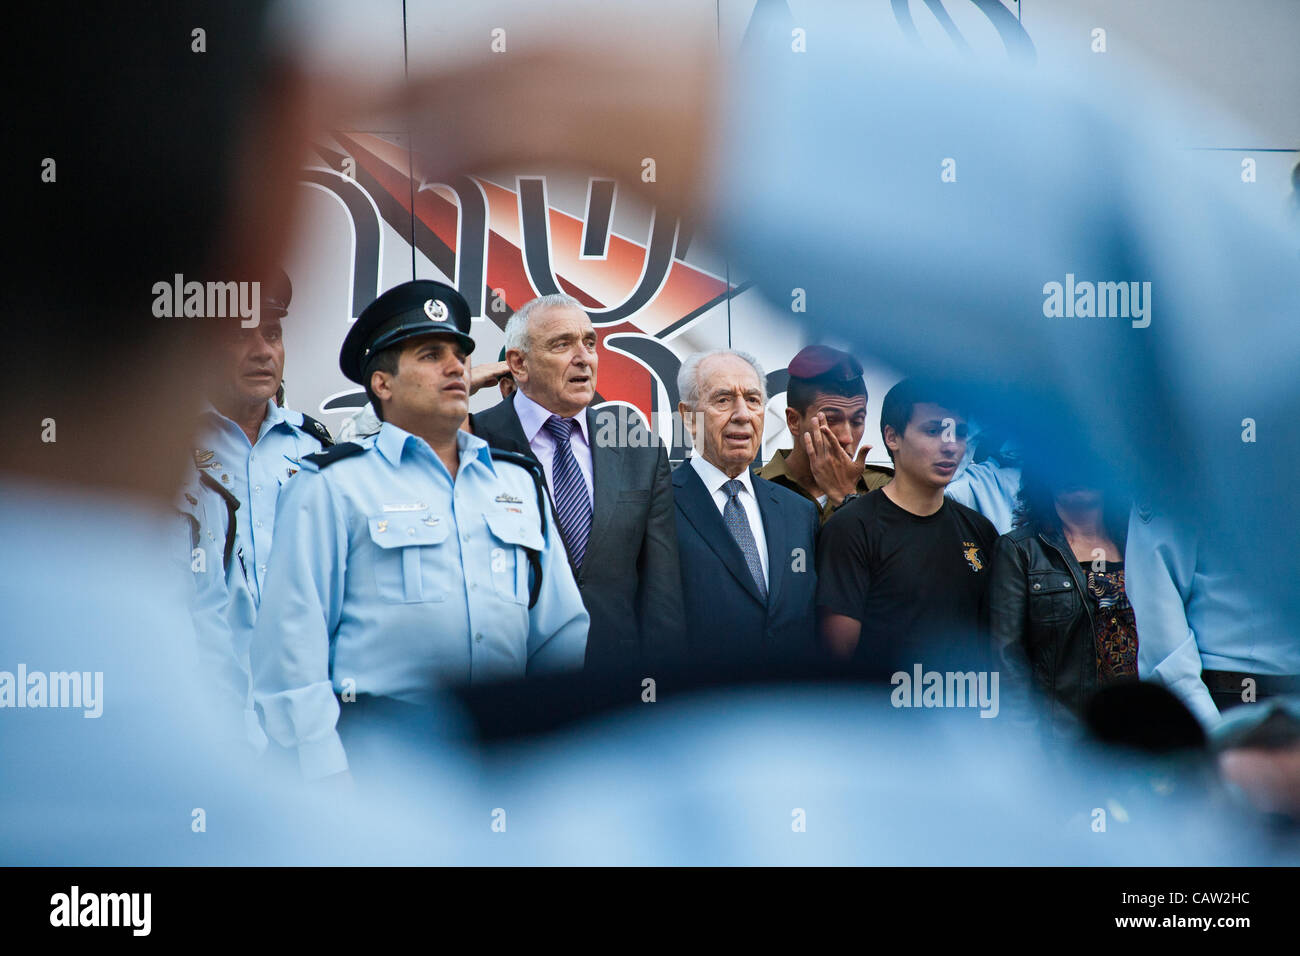 Le Président Shimon Peres et le ministre de la sécurité intérieure Yitzhak Aharonovitch chantent "HaTikva", l'hymne national israélien, la conclusion d'une cérémonie, vue à travers le bras raccourci d'un salut militaire Israël agent de police. Jérusalem, Israël. 23-Apr-2012. Banque D'Images